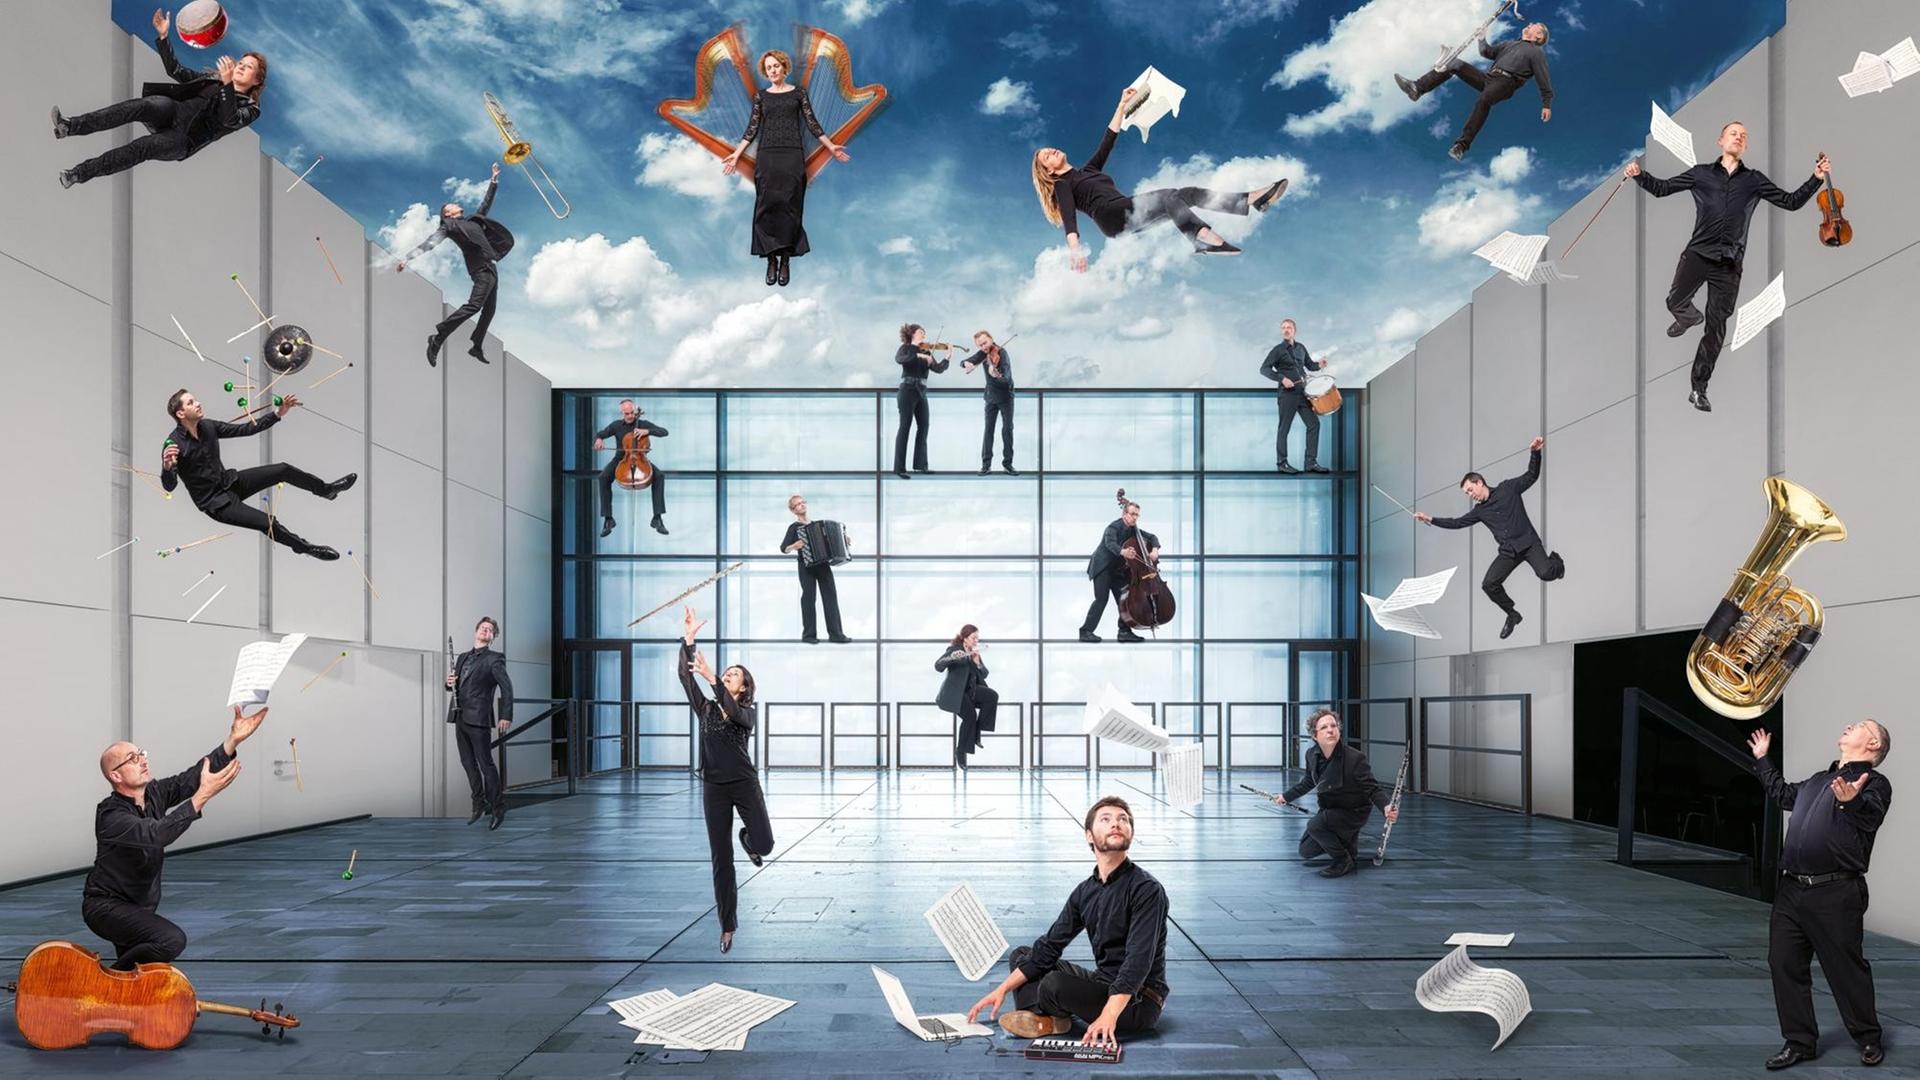 Das Ensemble ist in einer Collage zu sehen, in der die Musiker wild durcheinander sitzen, stehen und fliegen.